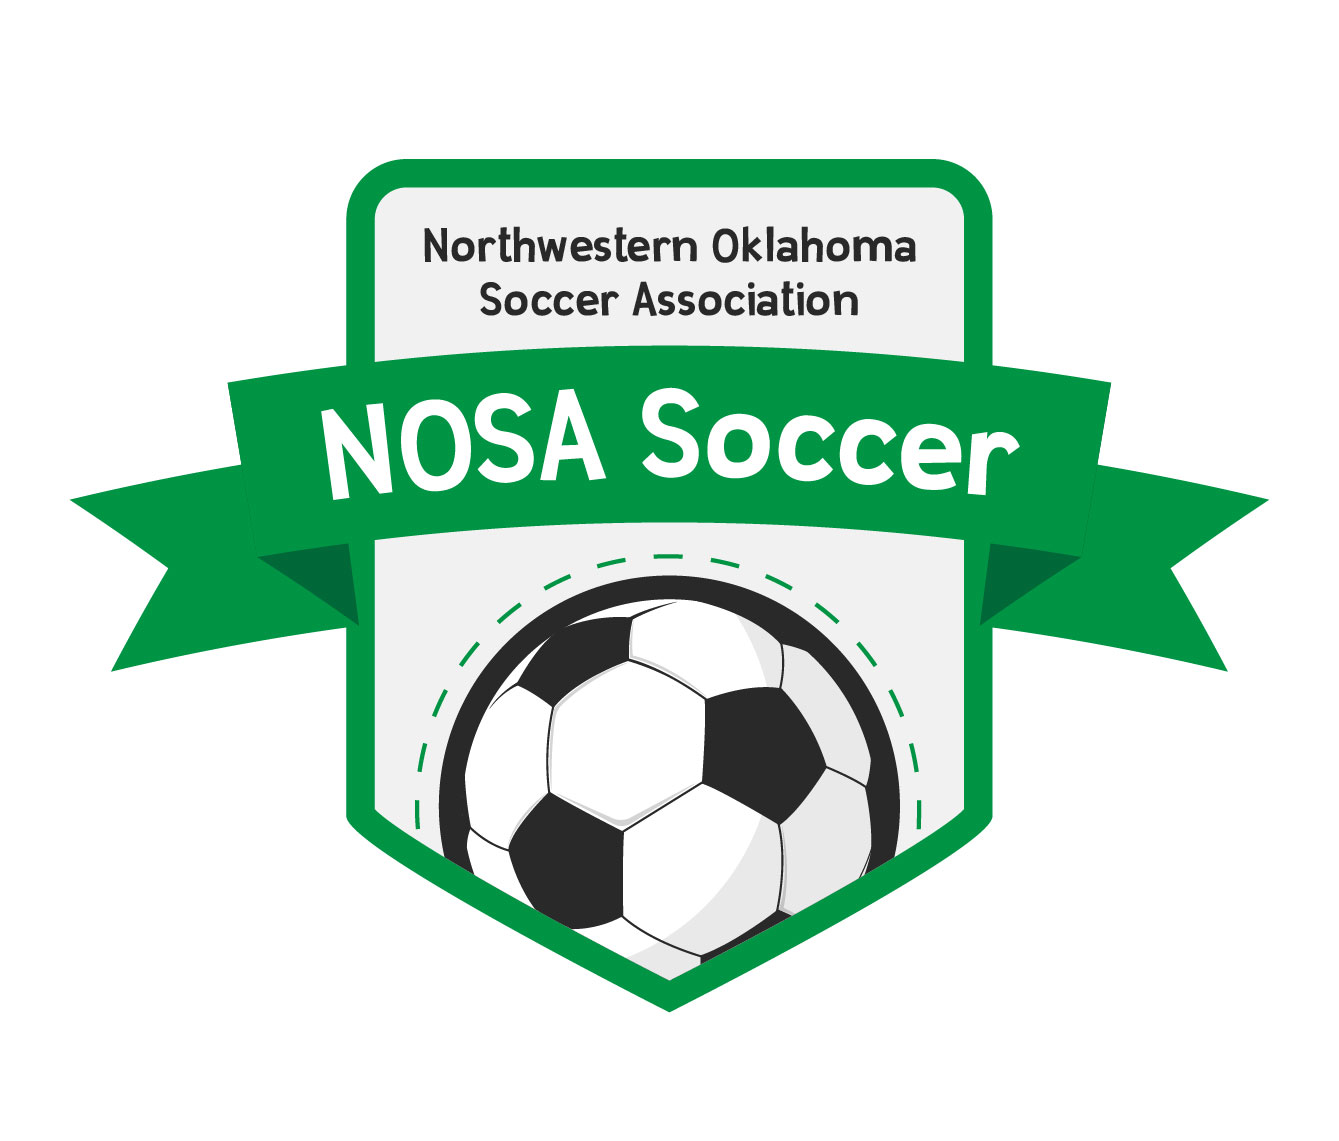 NW Oklahoma SA team badge